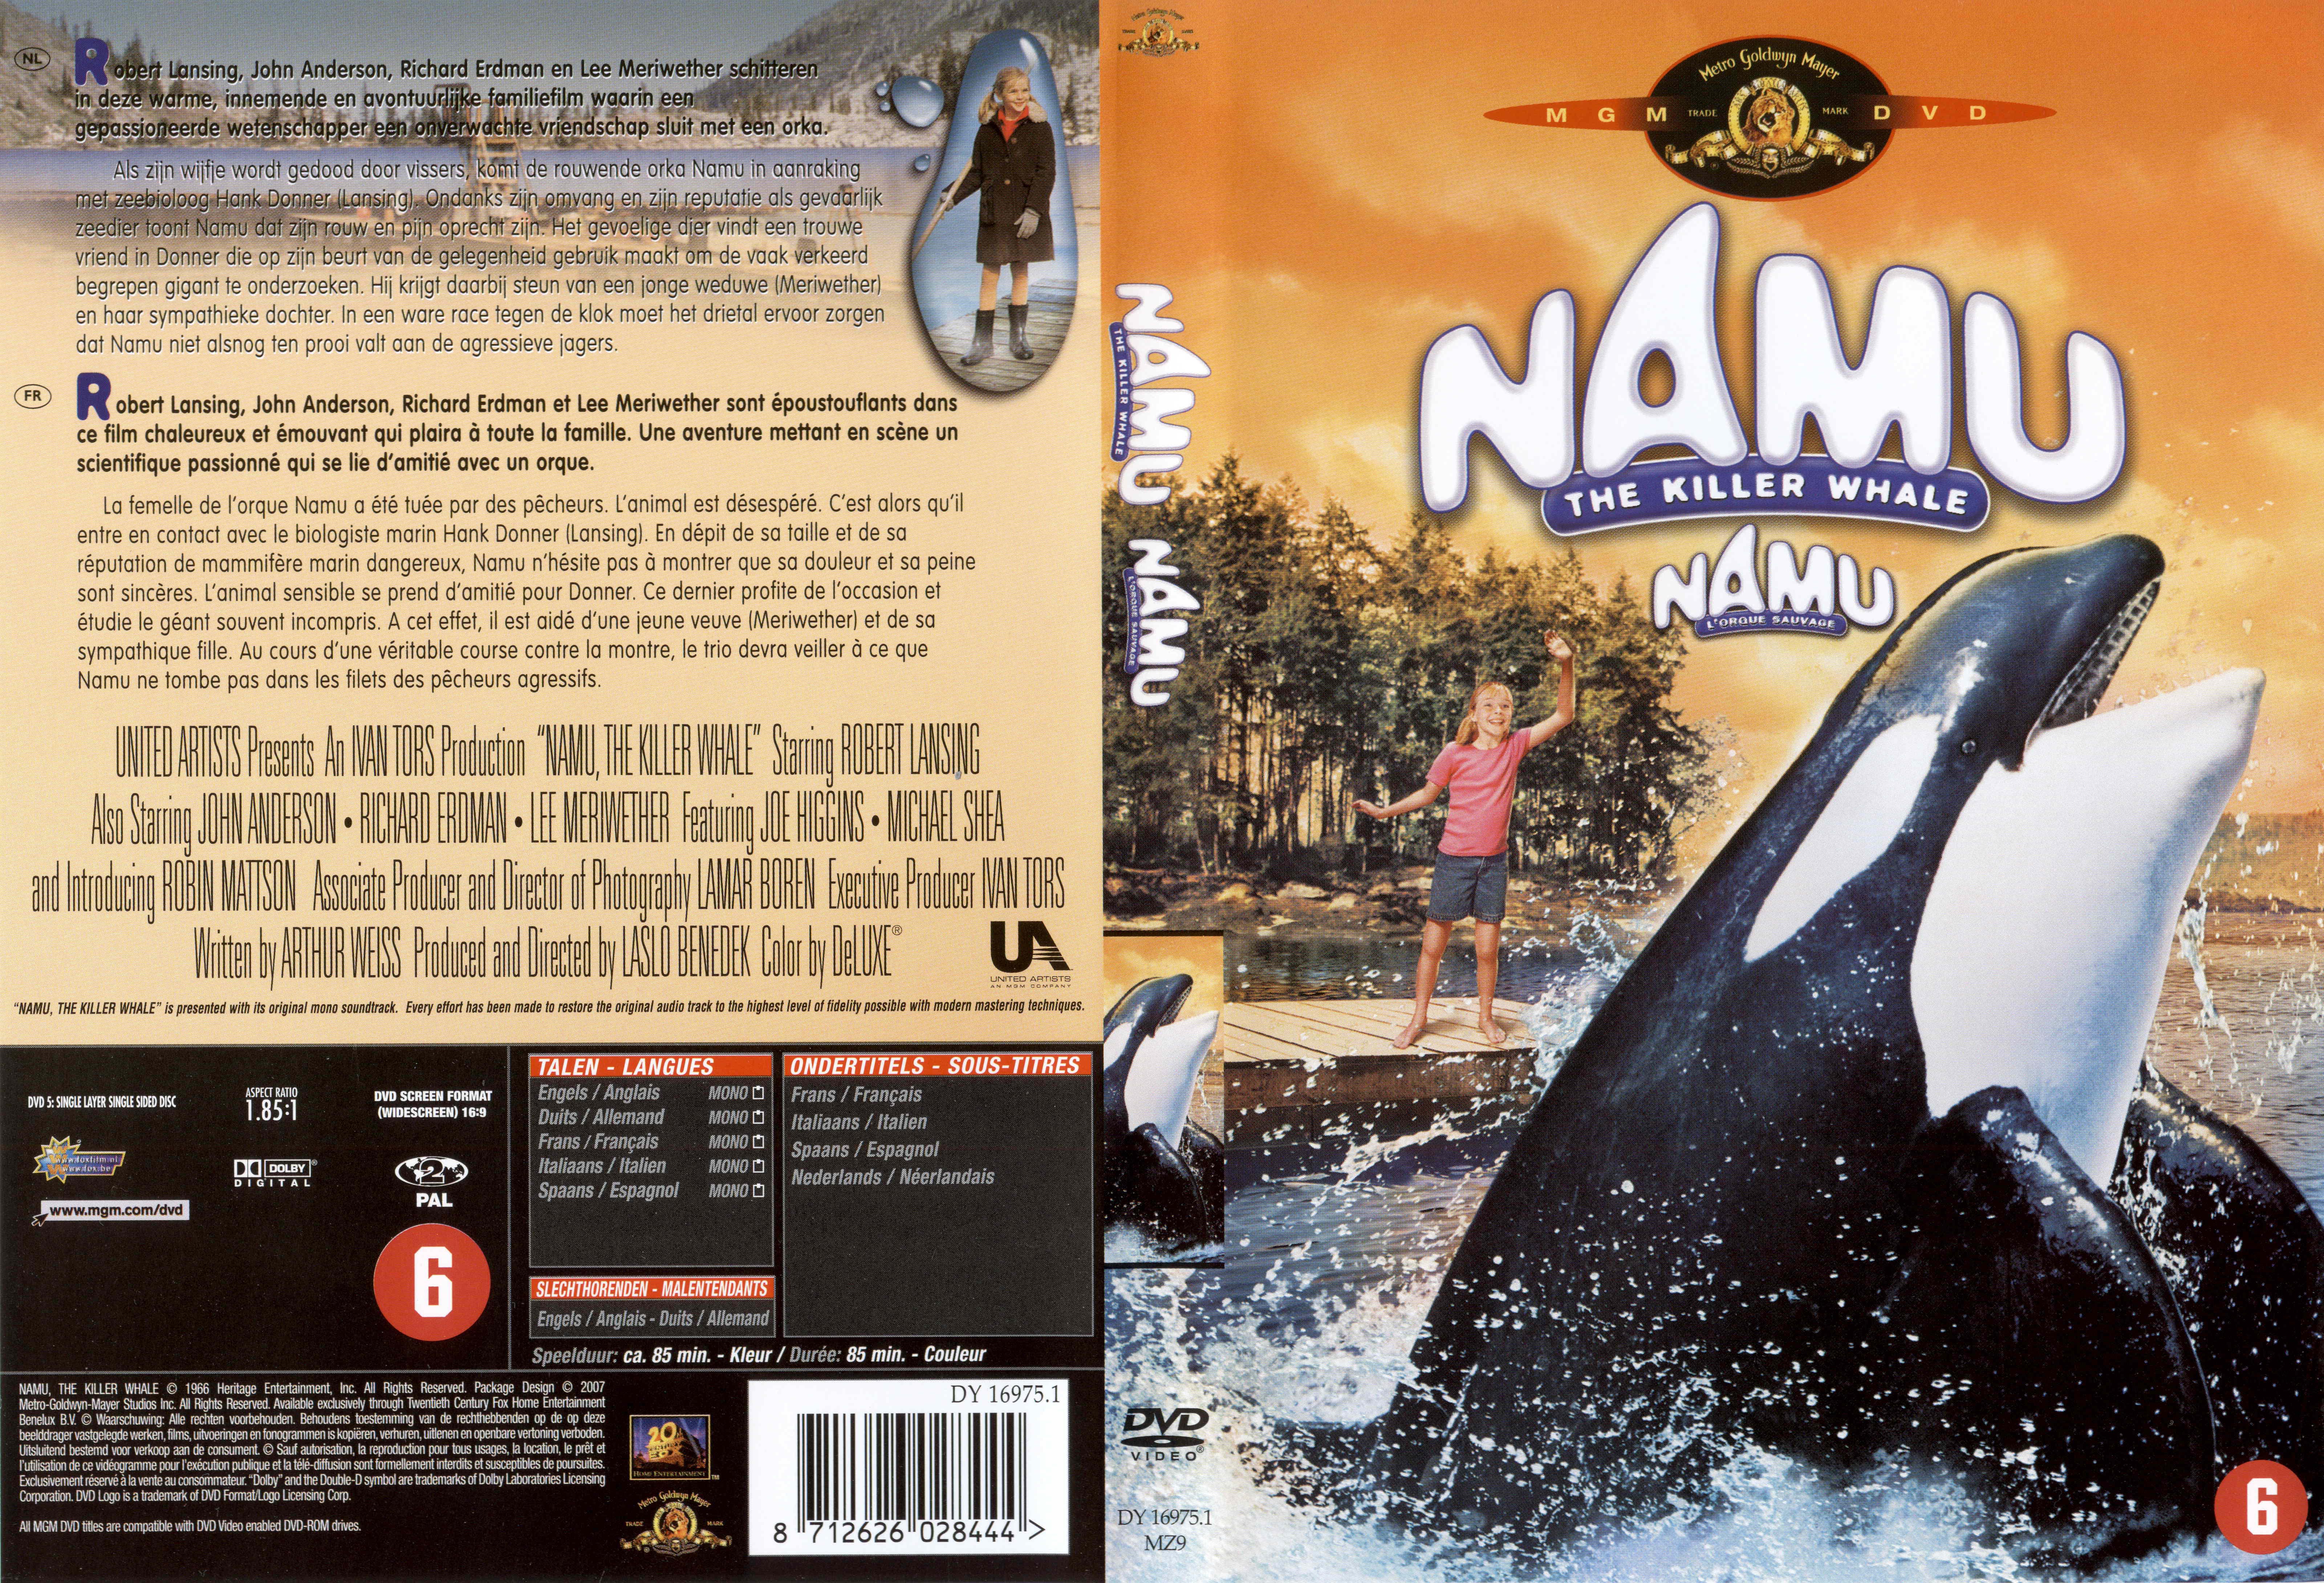 Jaquette DVD Namu l